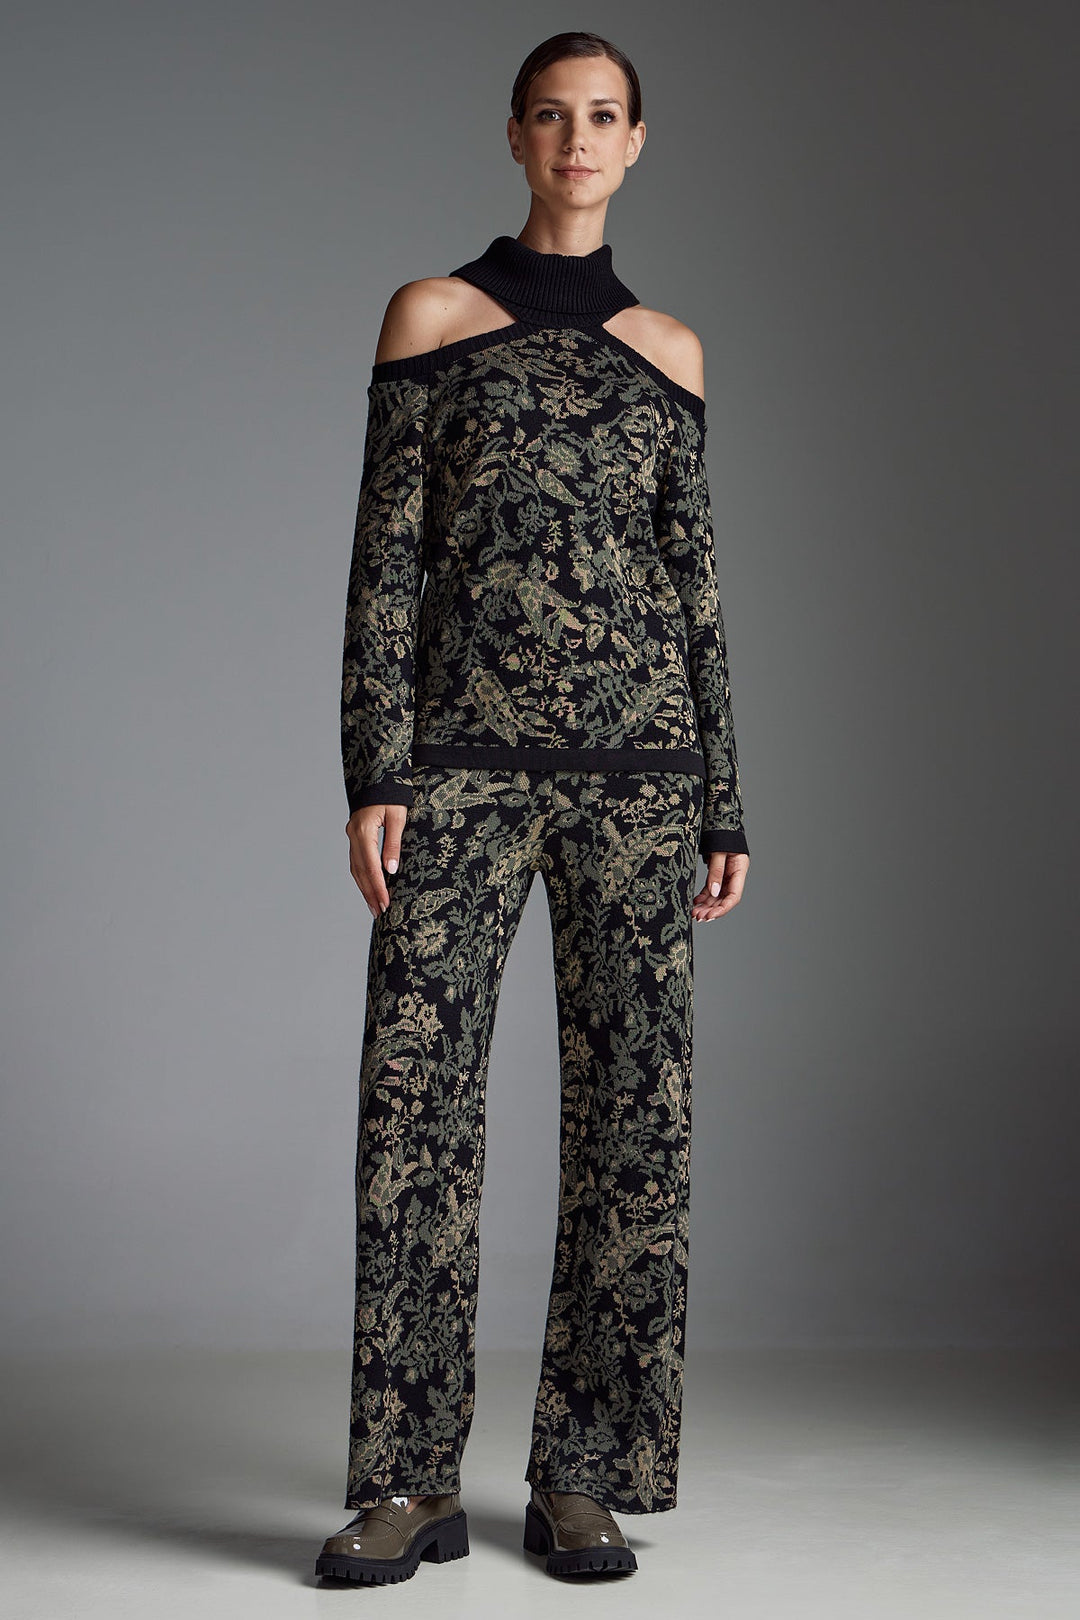 Παντελόνι φλοράλ με πλεκτρό ύφασμα Figaro Fashion - A Collection Boutique